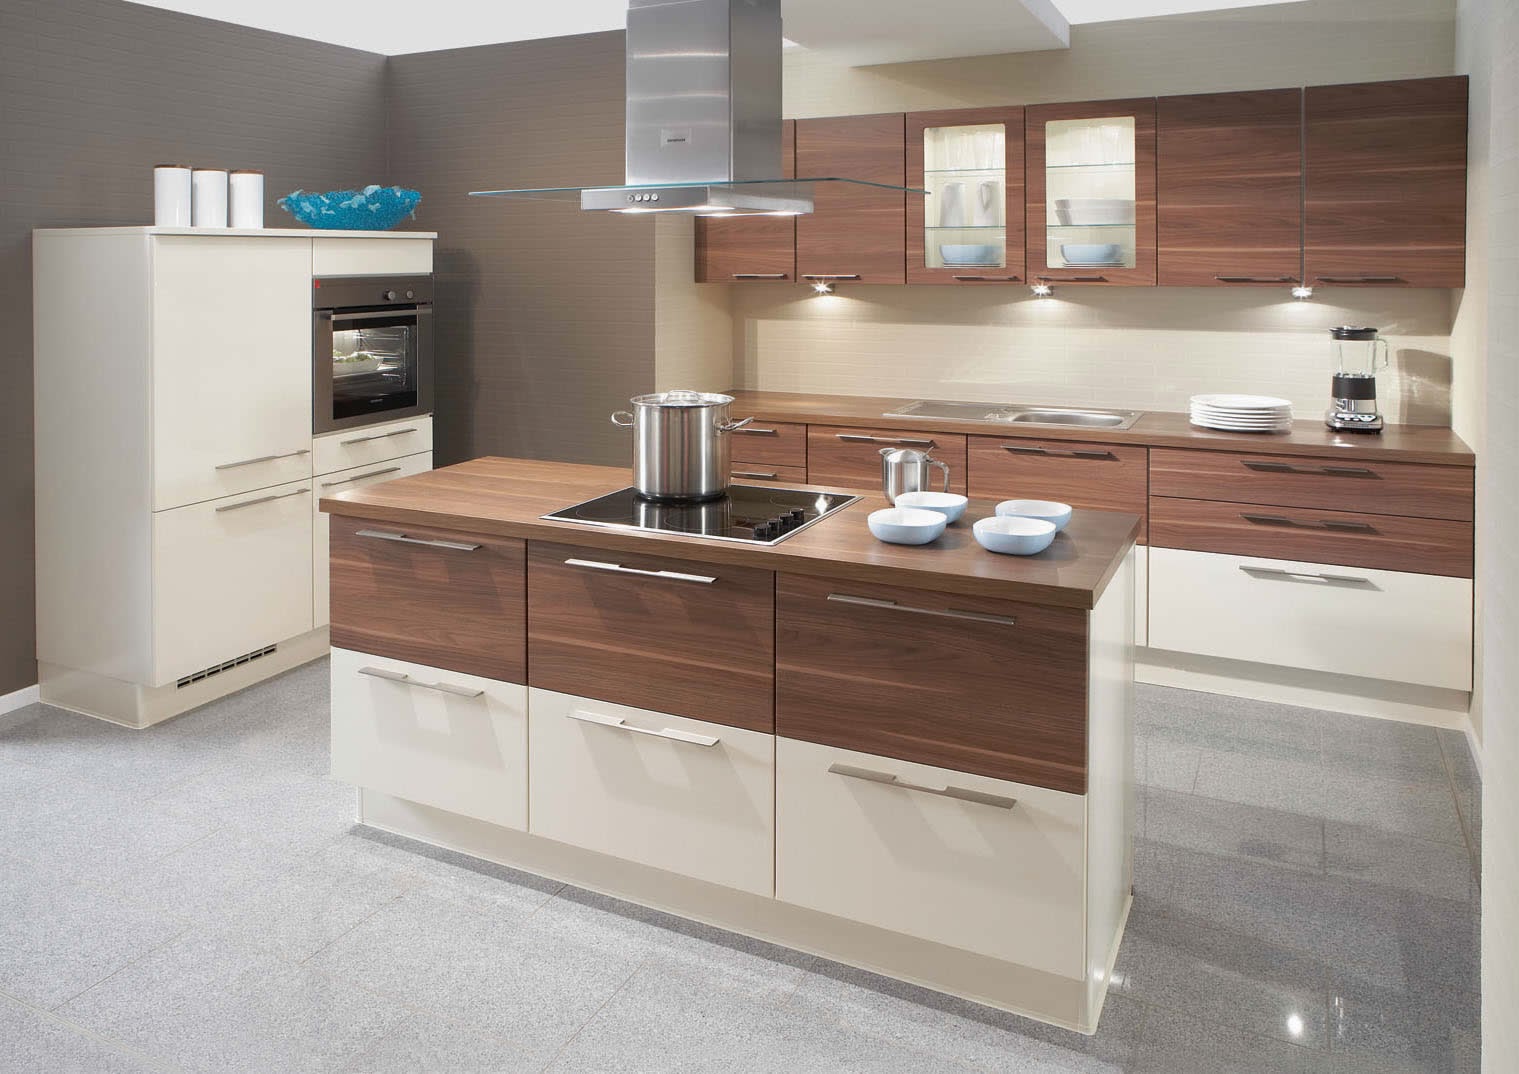 Desain Dapur Minimalis Modern Terbaru 2015 Desain Denah Rumah